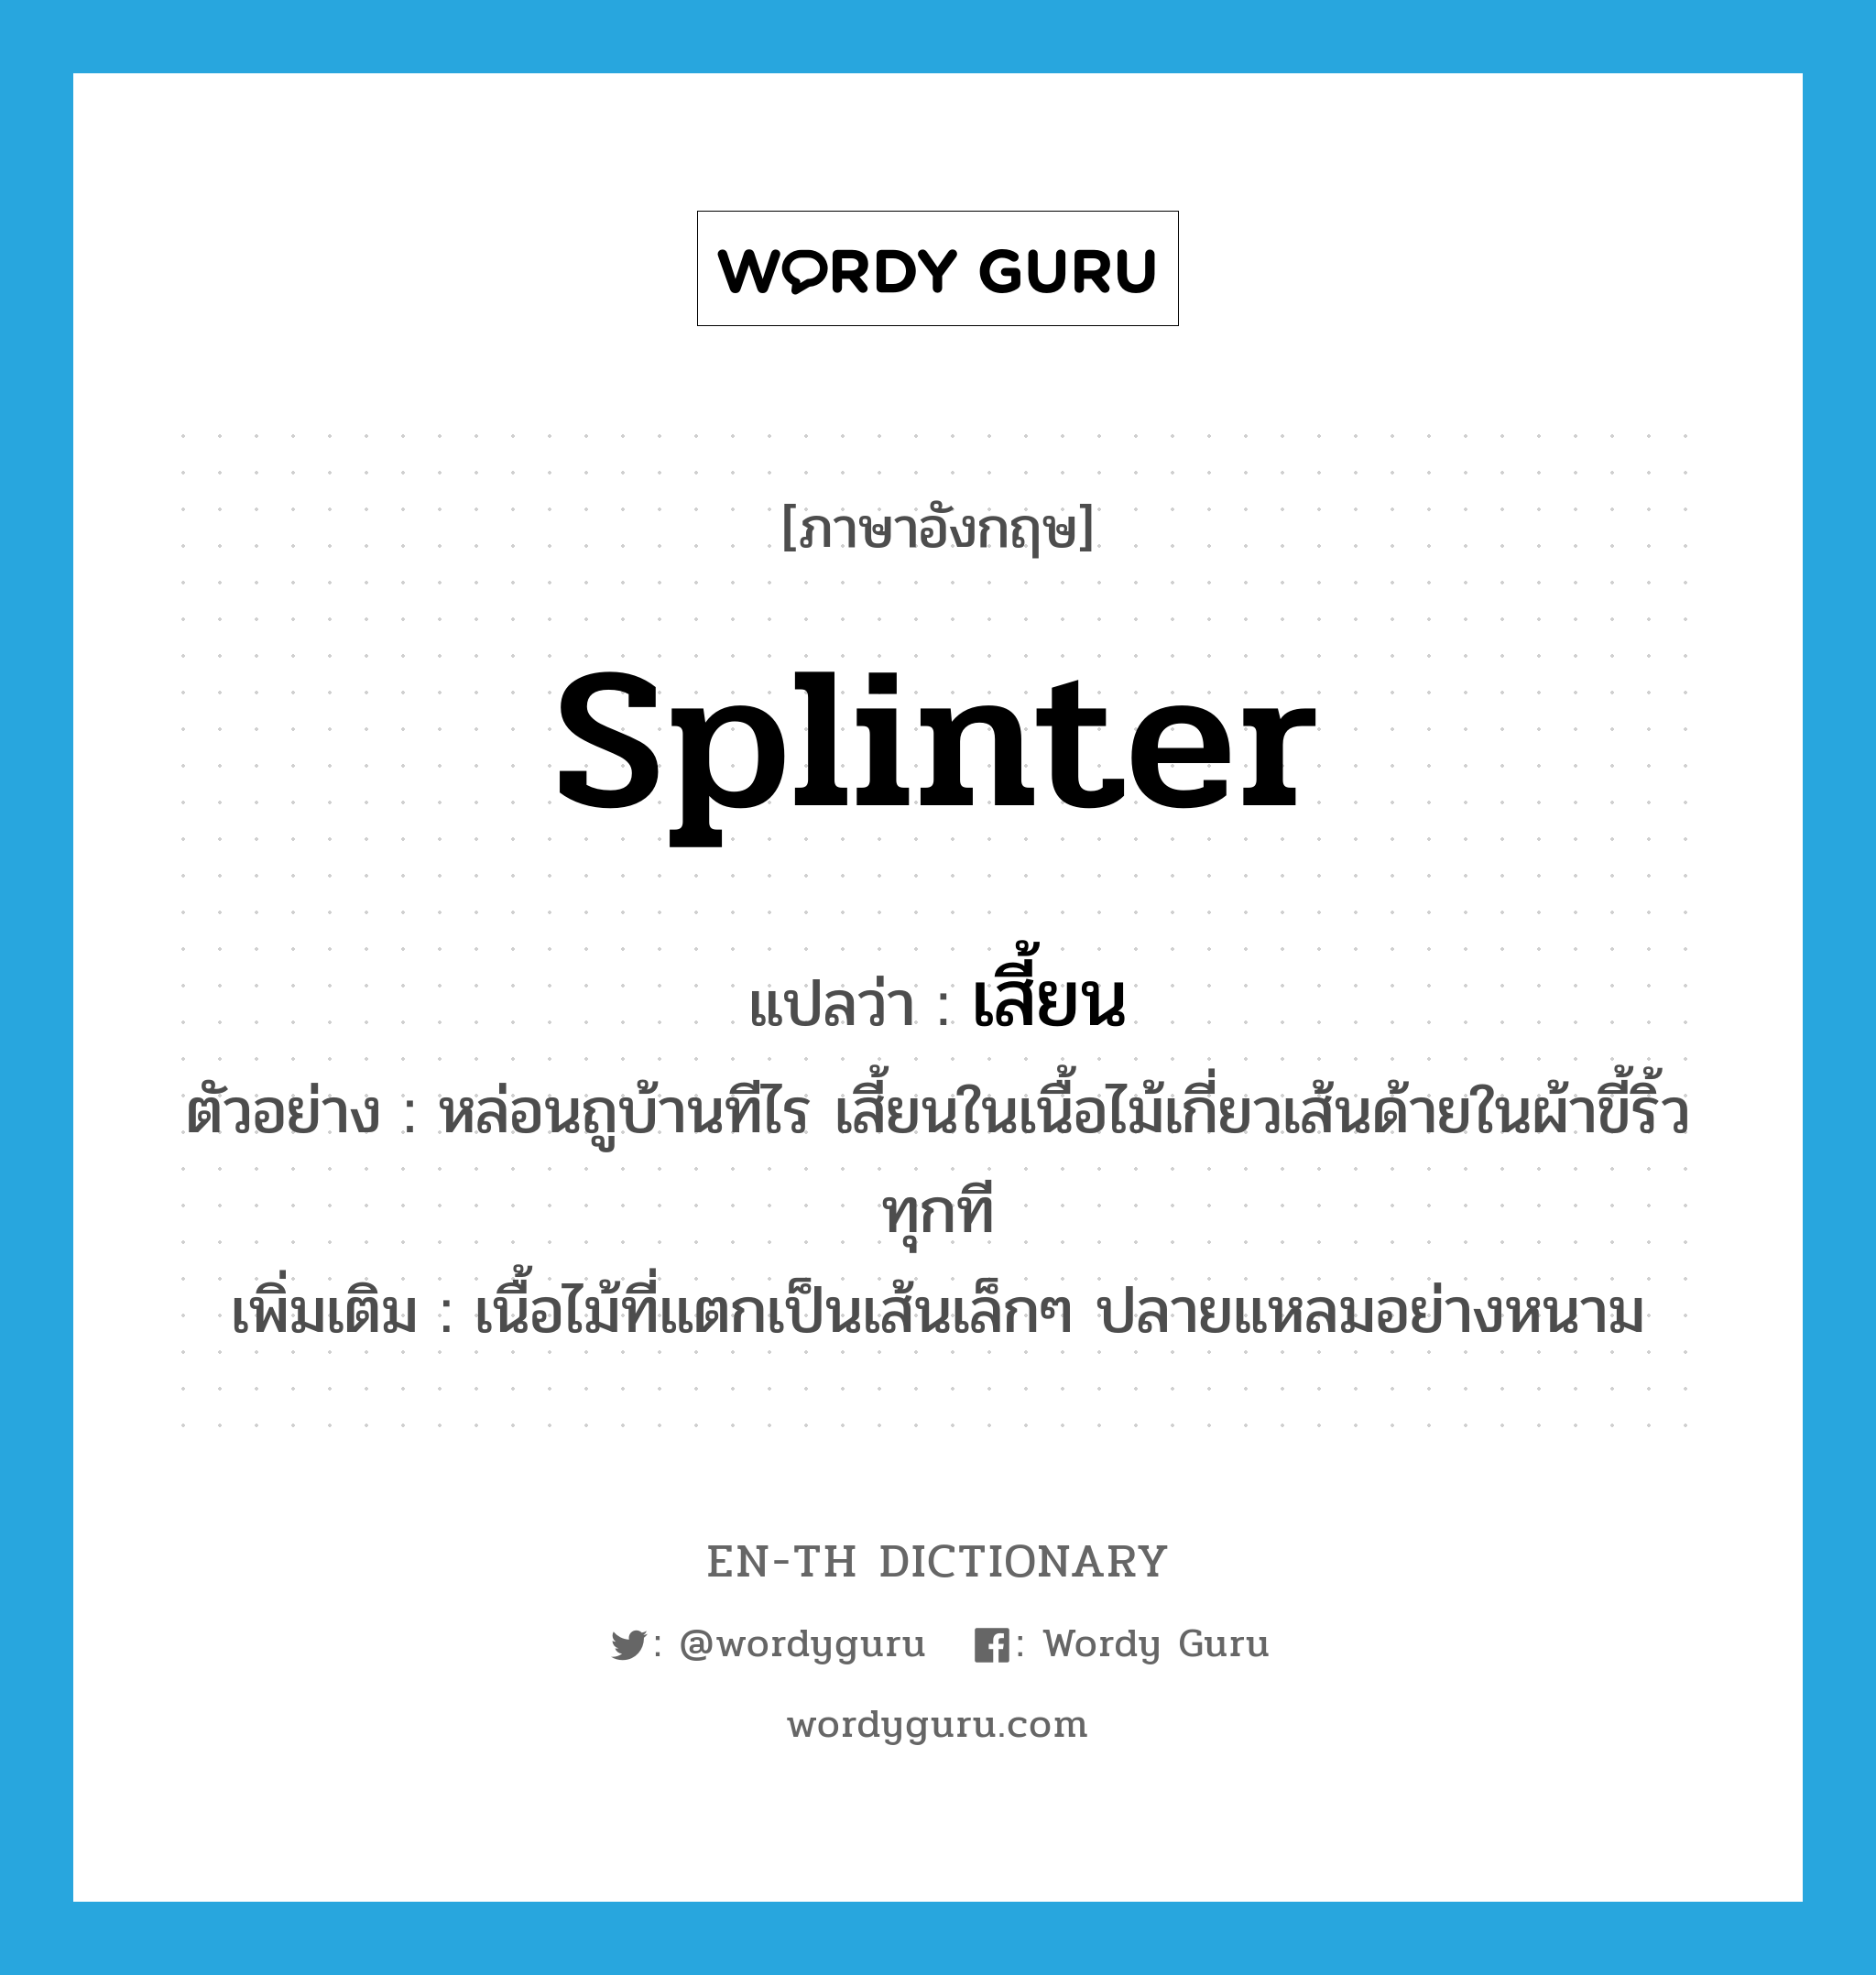 splinter แปลว่า?, คำศัพท์ภาษาอังกฤษ splinter แปลว่า เสี้ยน ประเภท N ตัวอย่าง หล่อนถูบ้านทีไร เสี้ยนในเนื้อไม้เกี่ยวเส้นด้ายในผ้าขี้ริ้วทุกที เพิ่มเติม เนื้อไม้ที่แตกเป็นเส้นเล็กๆ ปลายแหลมอย่างหนาม หมวด N